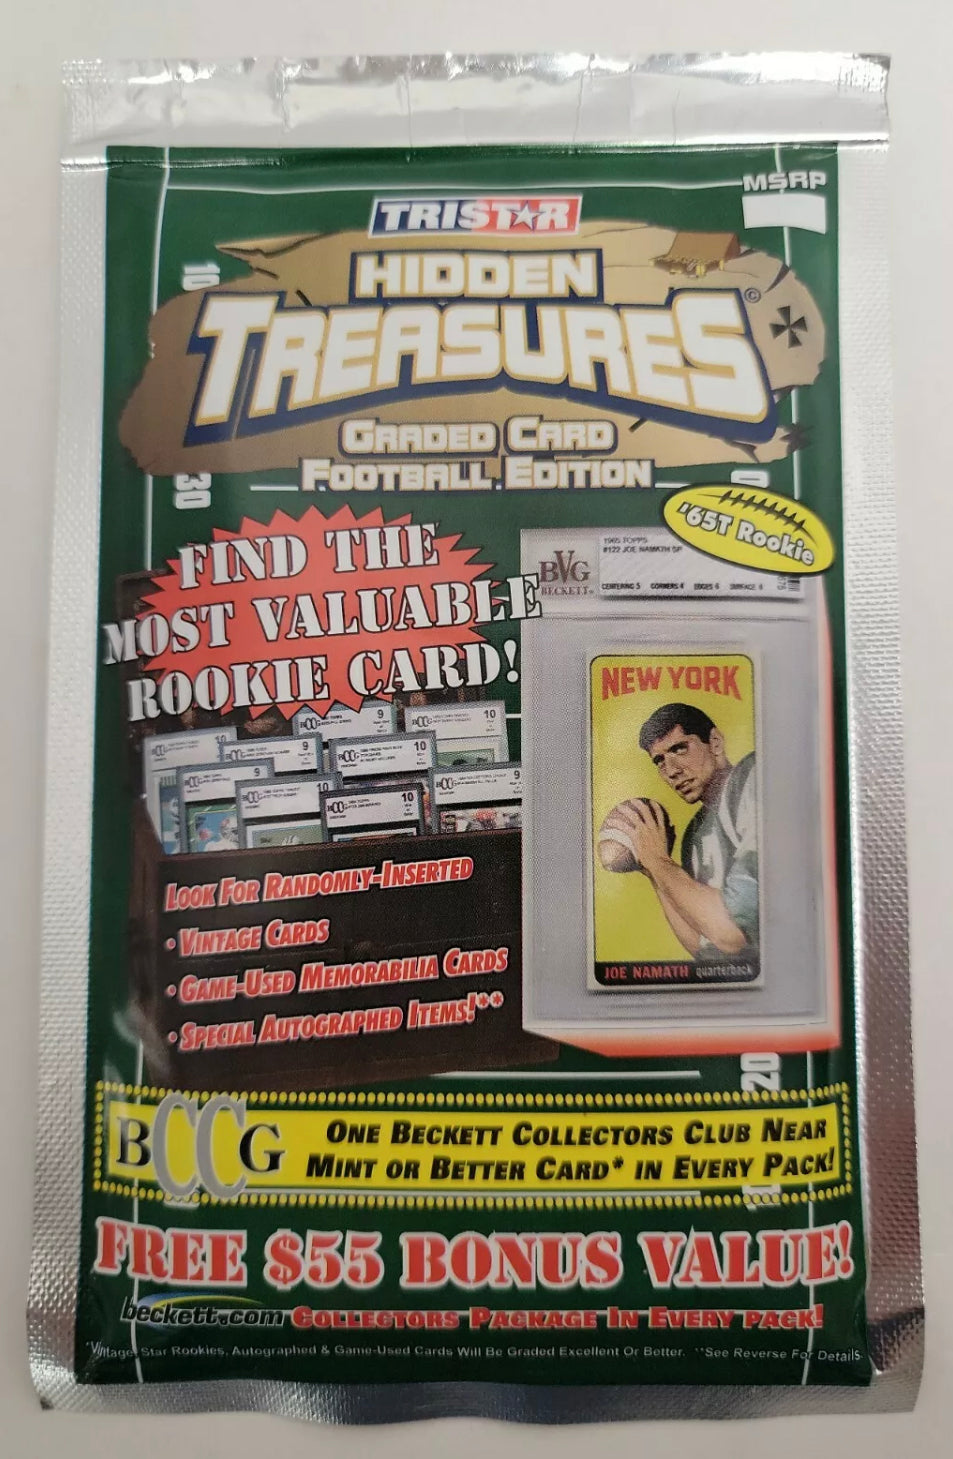 1 pack 2006 TriStar Hidden Treasures Graded Card Football Edition